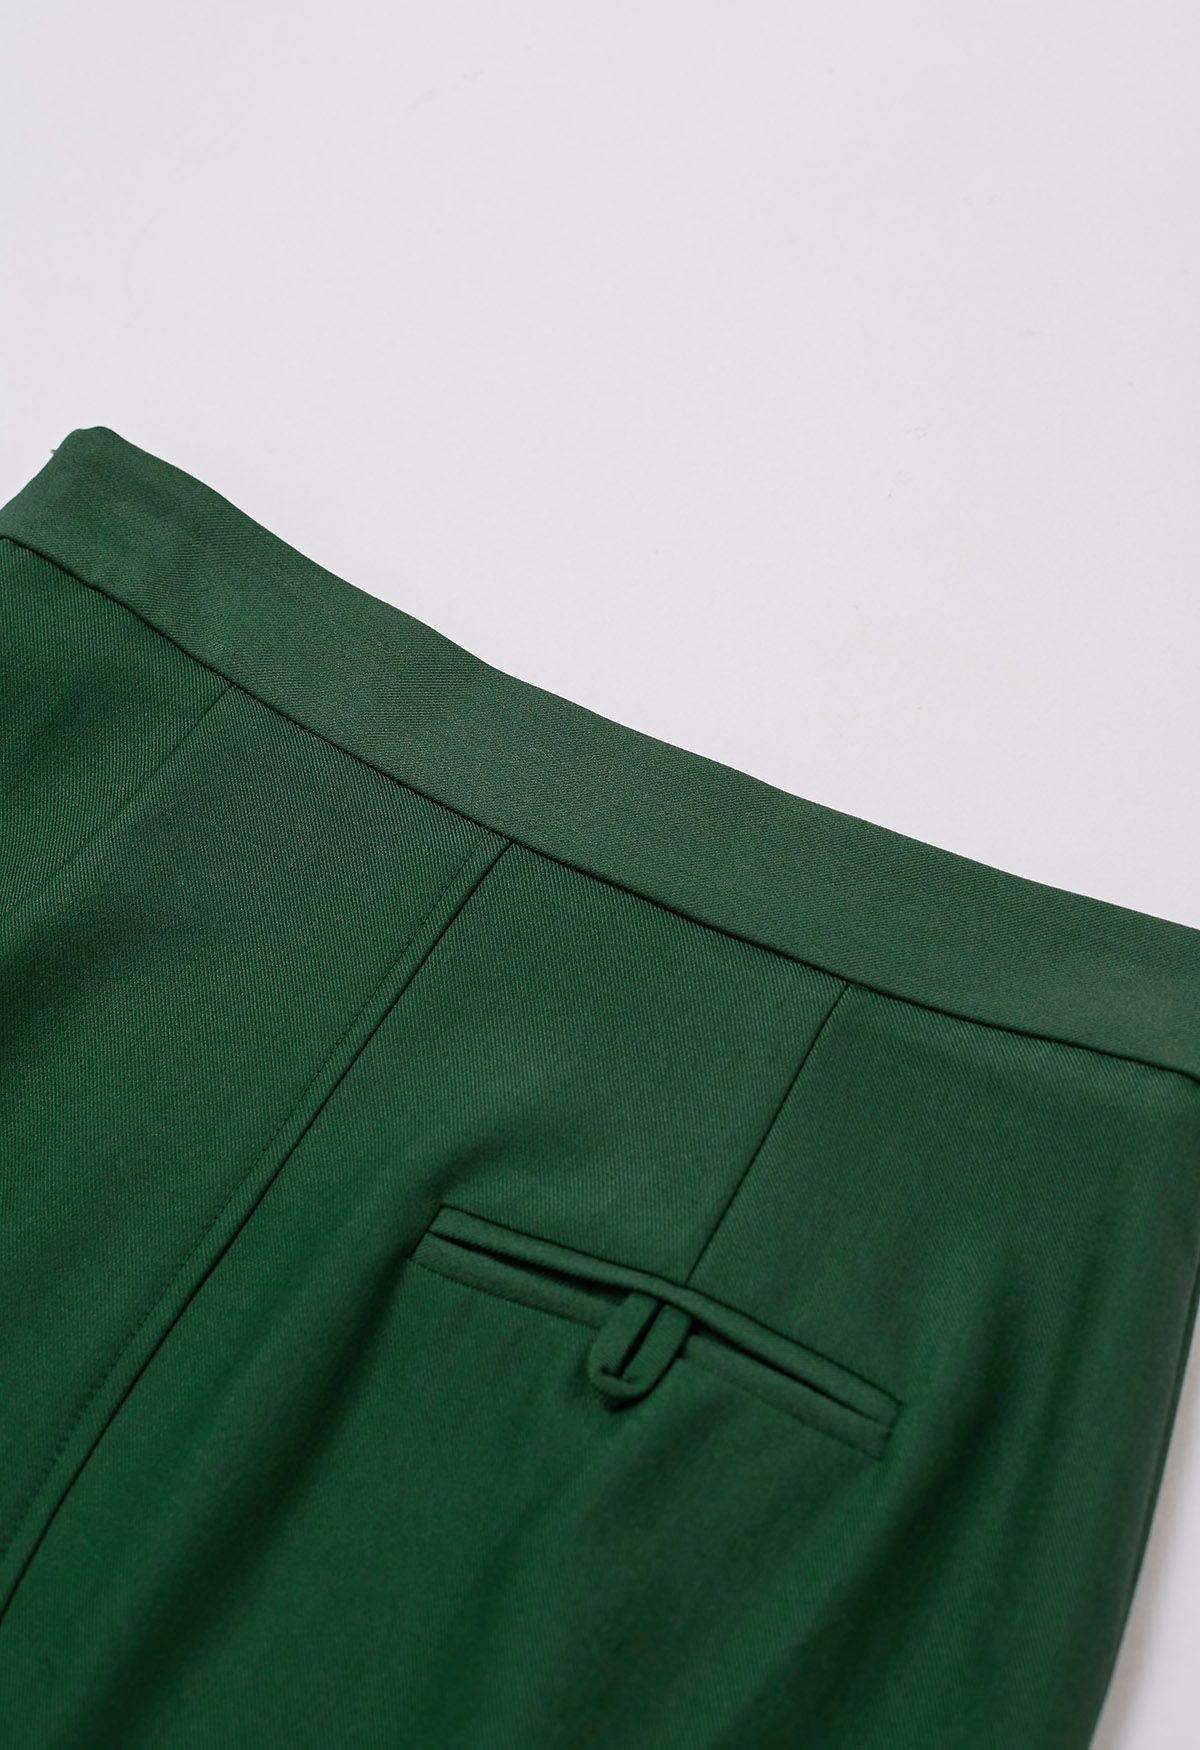 Welt Pocket Front Slit Skirt in Green